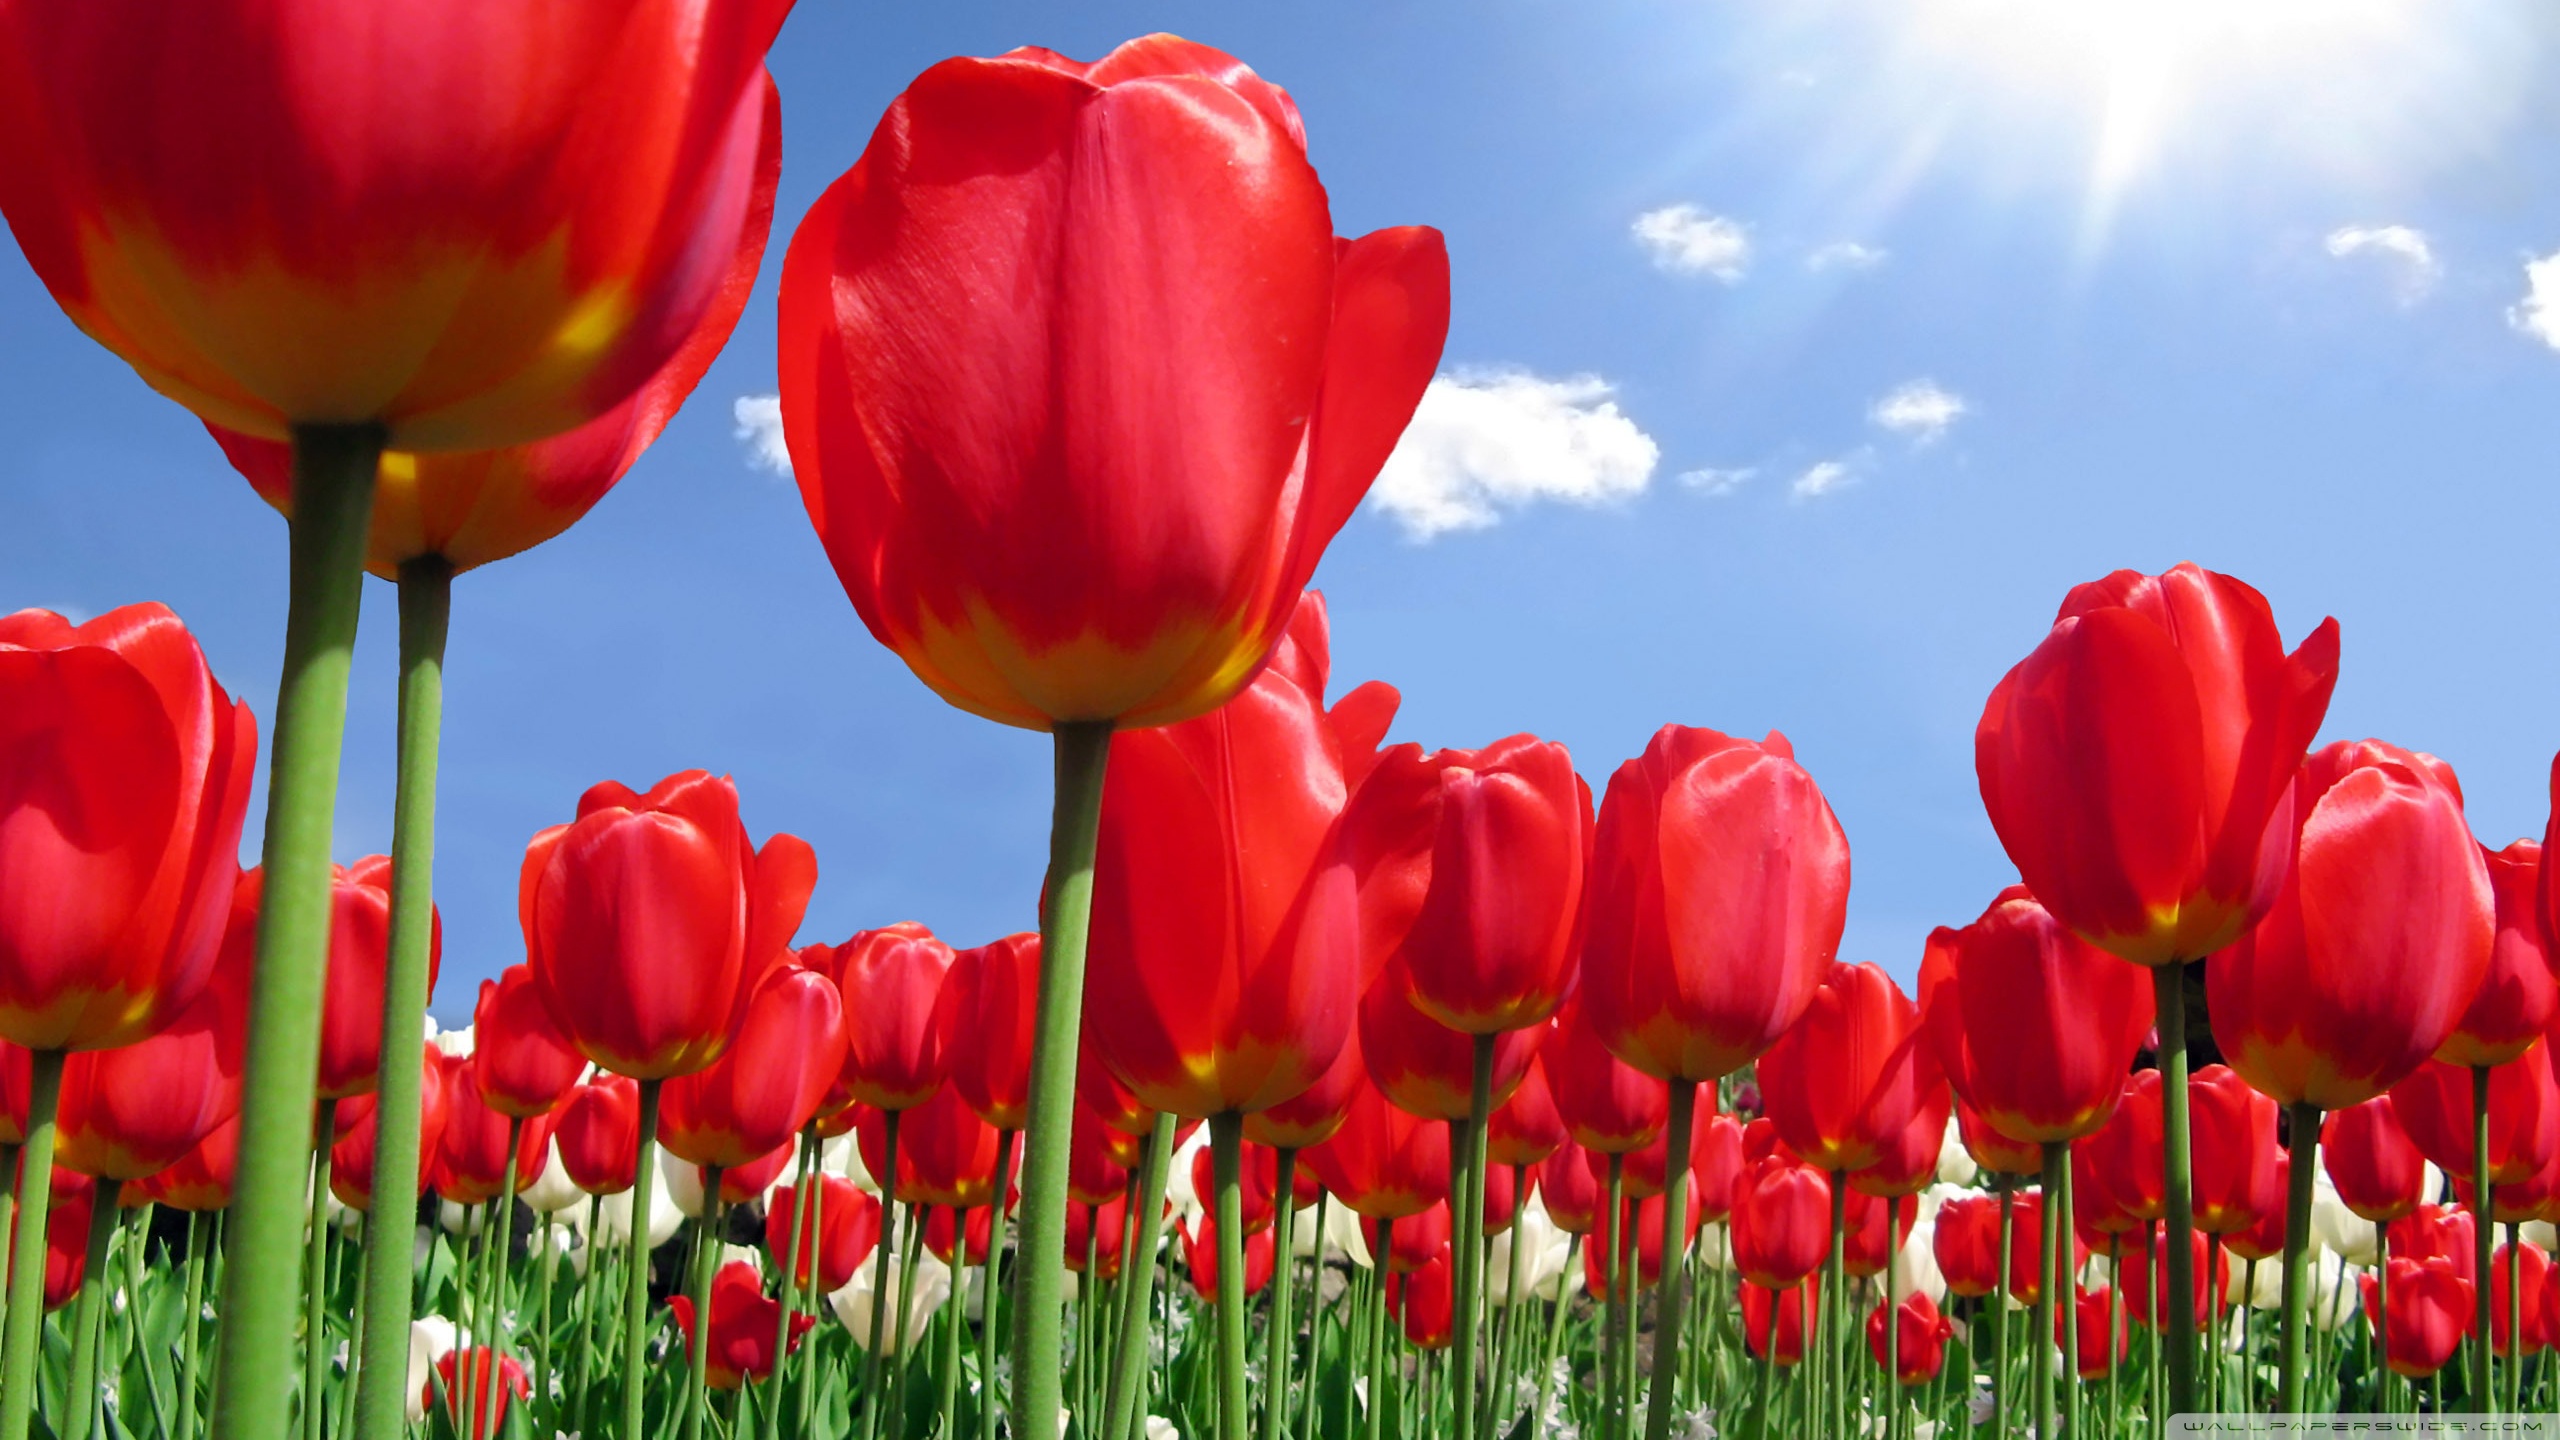 Red Tulips Field ❤ 4K HD Desktop Wallpaper for 4K Ultra HD TV ...